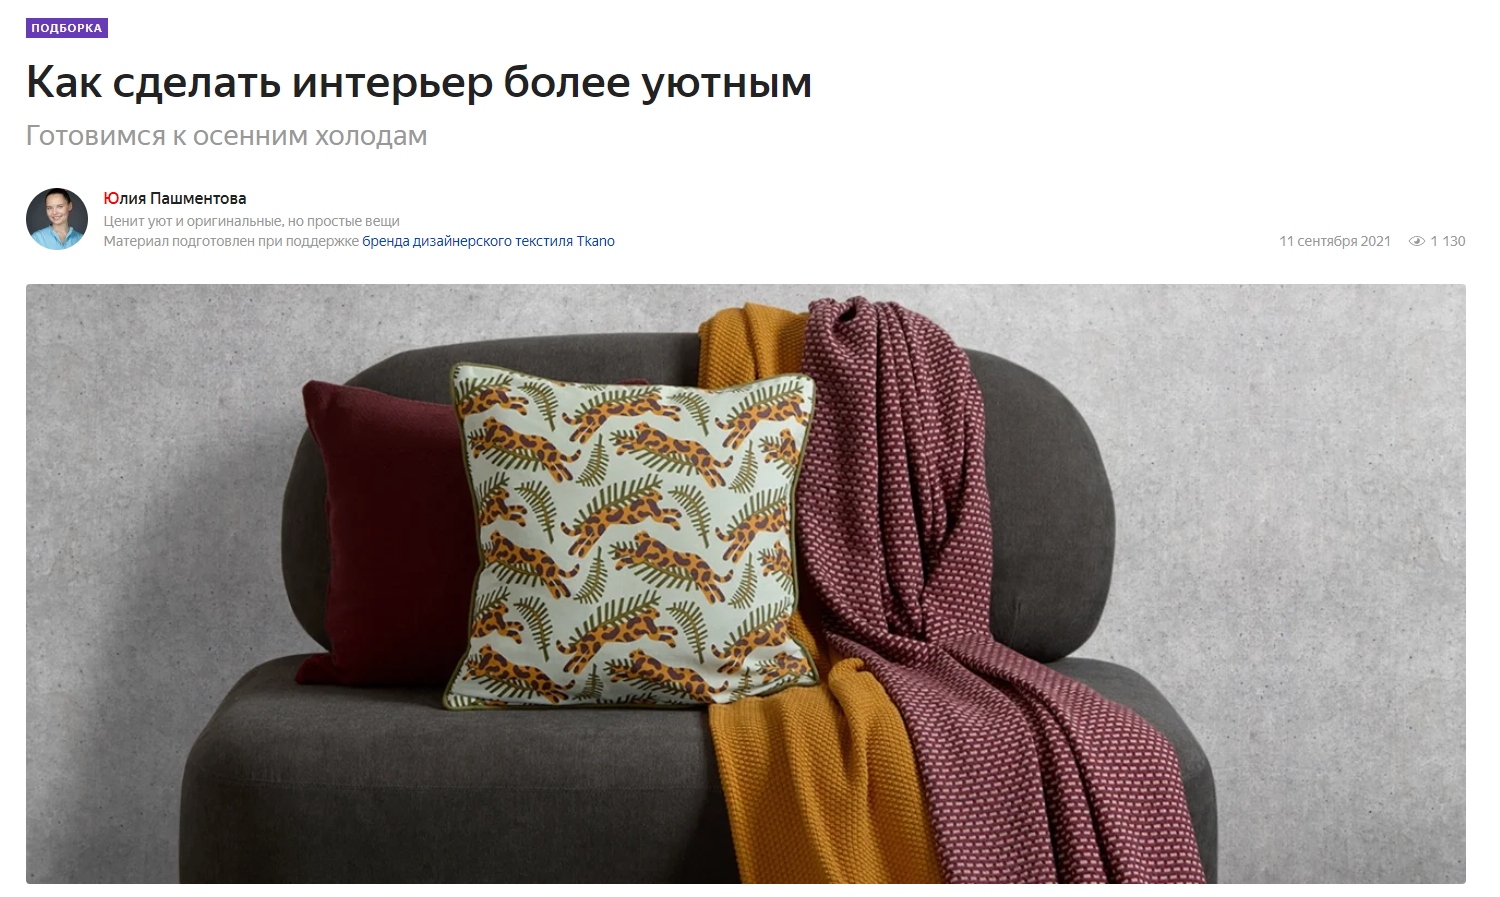 market.yandex.ru: текстиль Tkano в подборке "Как сделать интерьер более уютным"